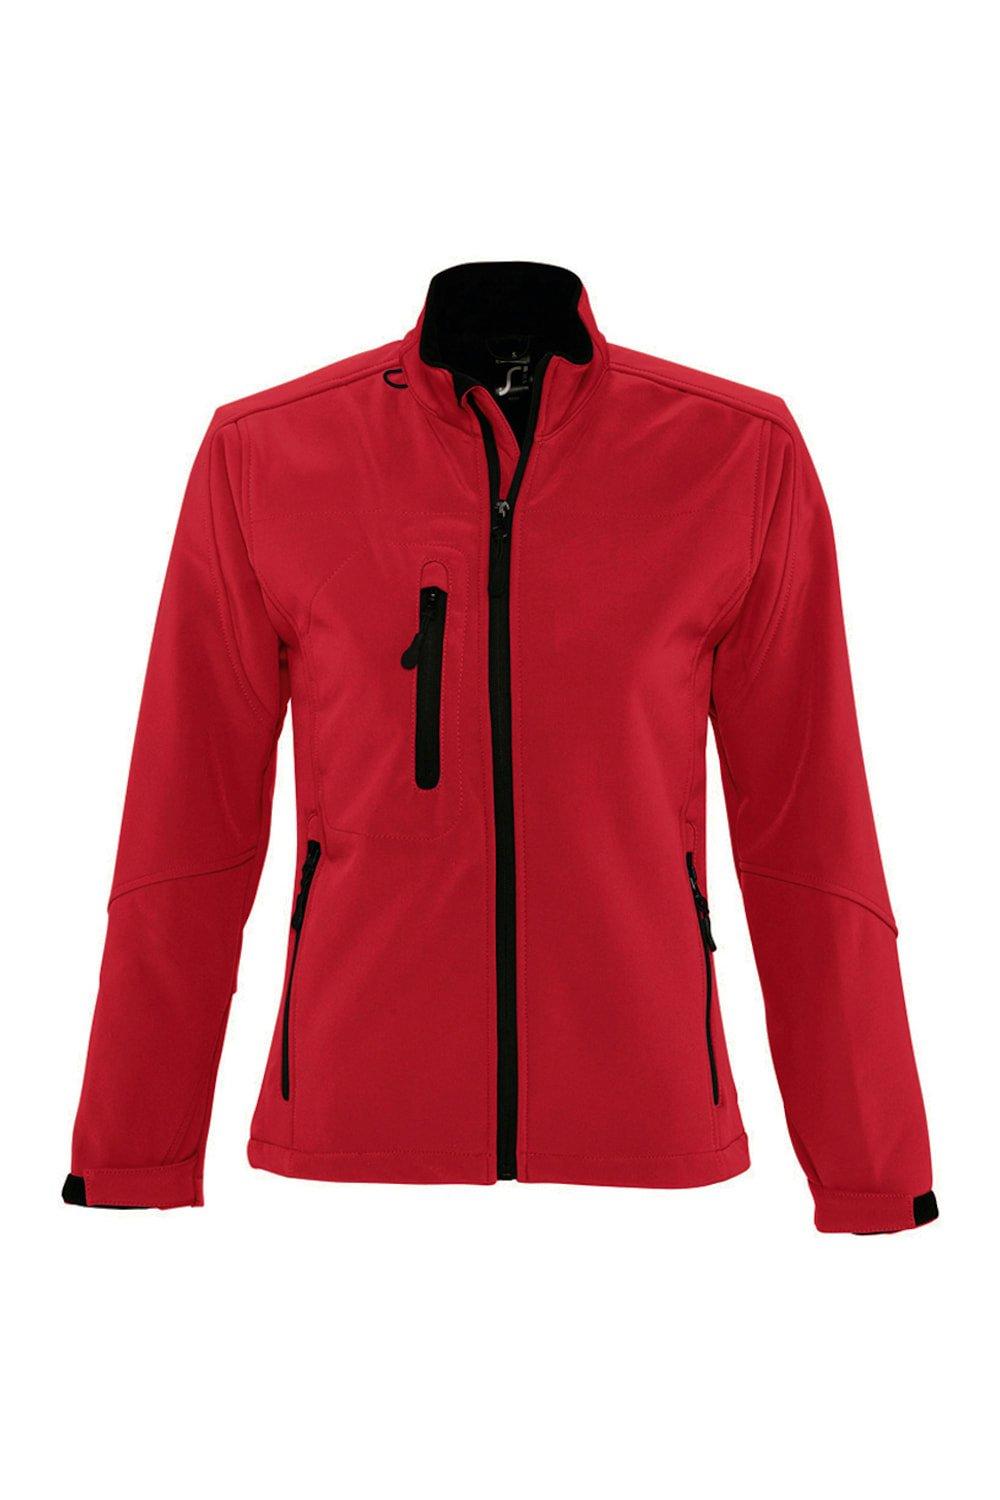 Куртка Roxy Soft Shell (дышащая, ветрозащитная и водостойкая) SOL'S, красный